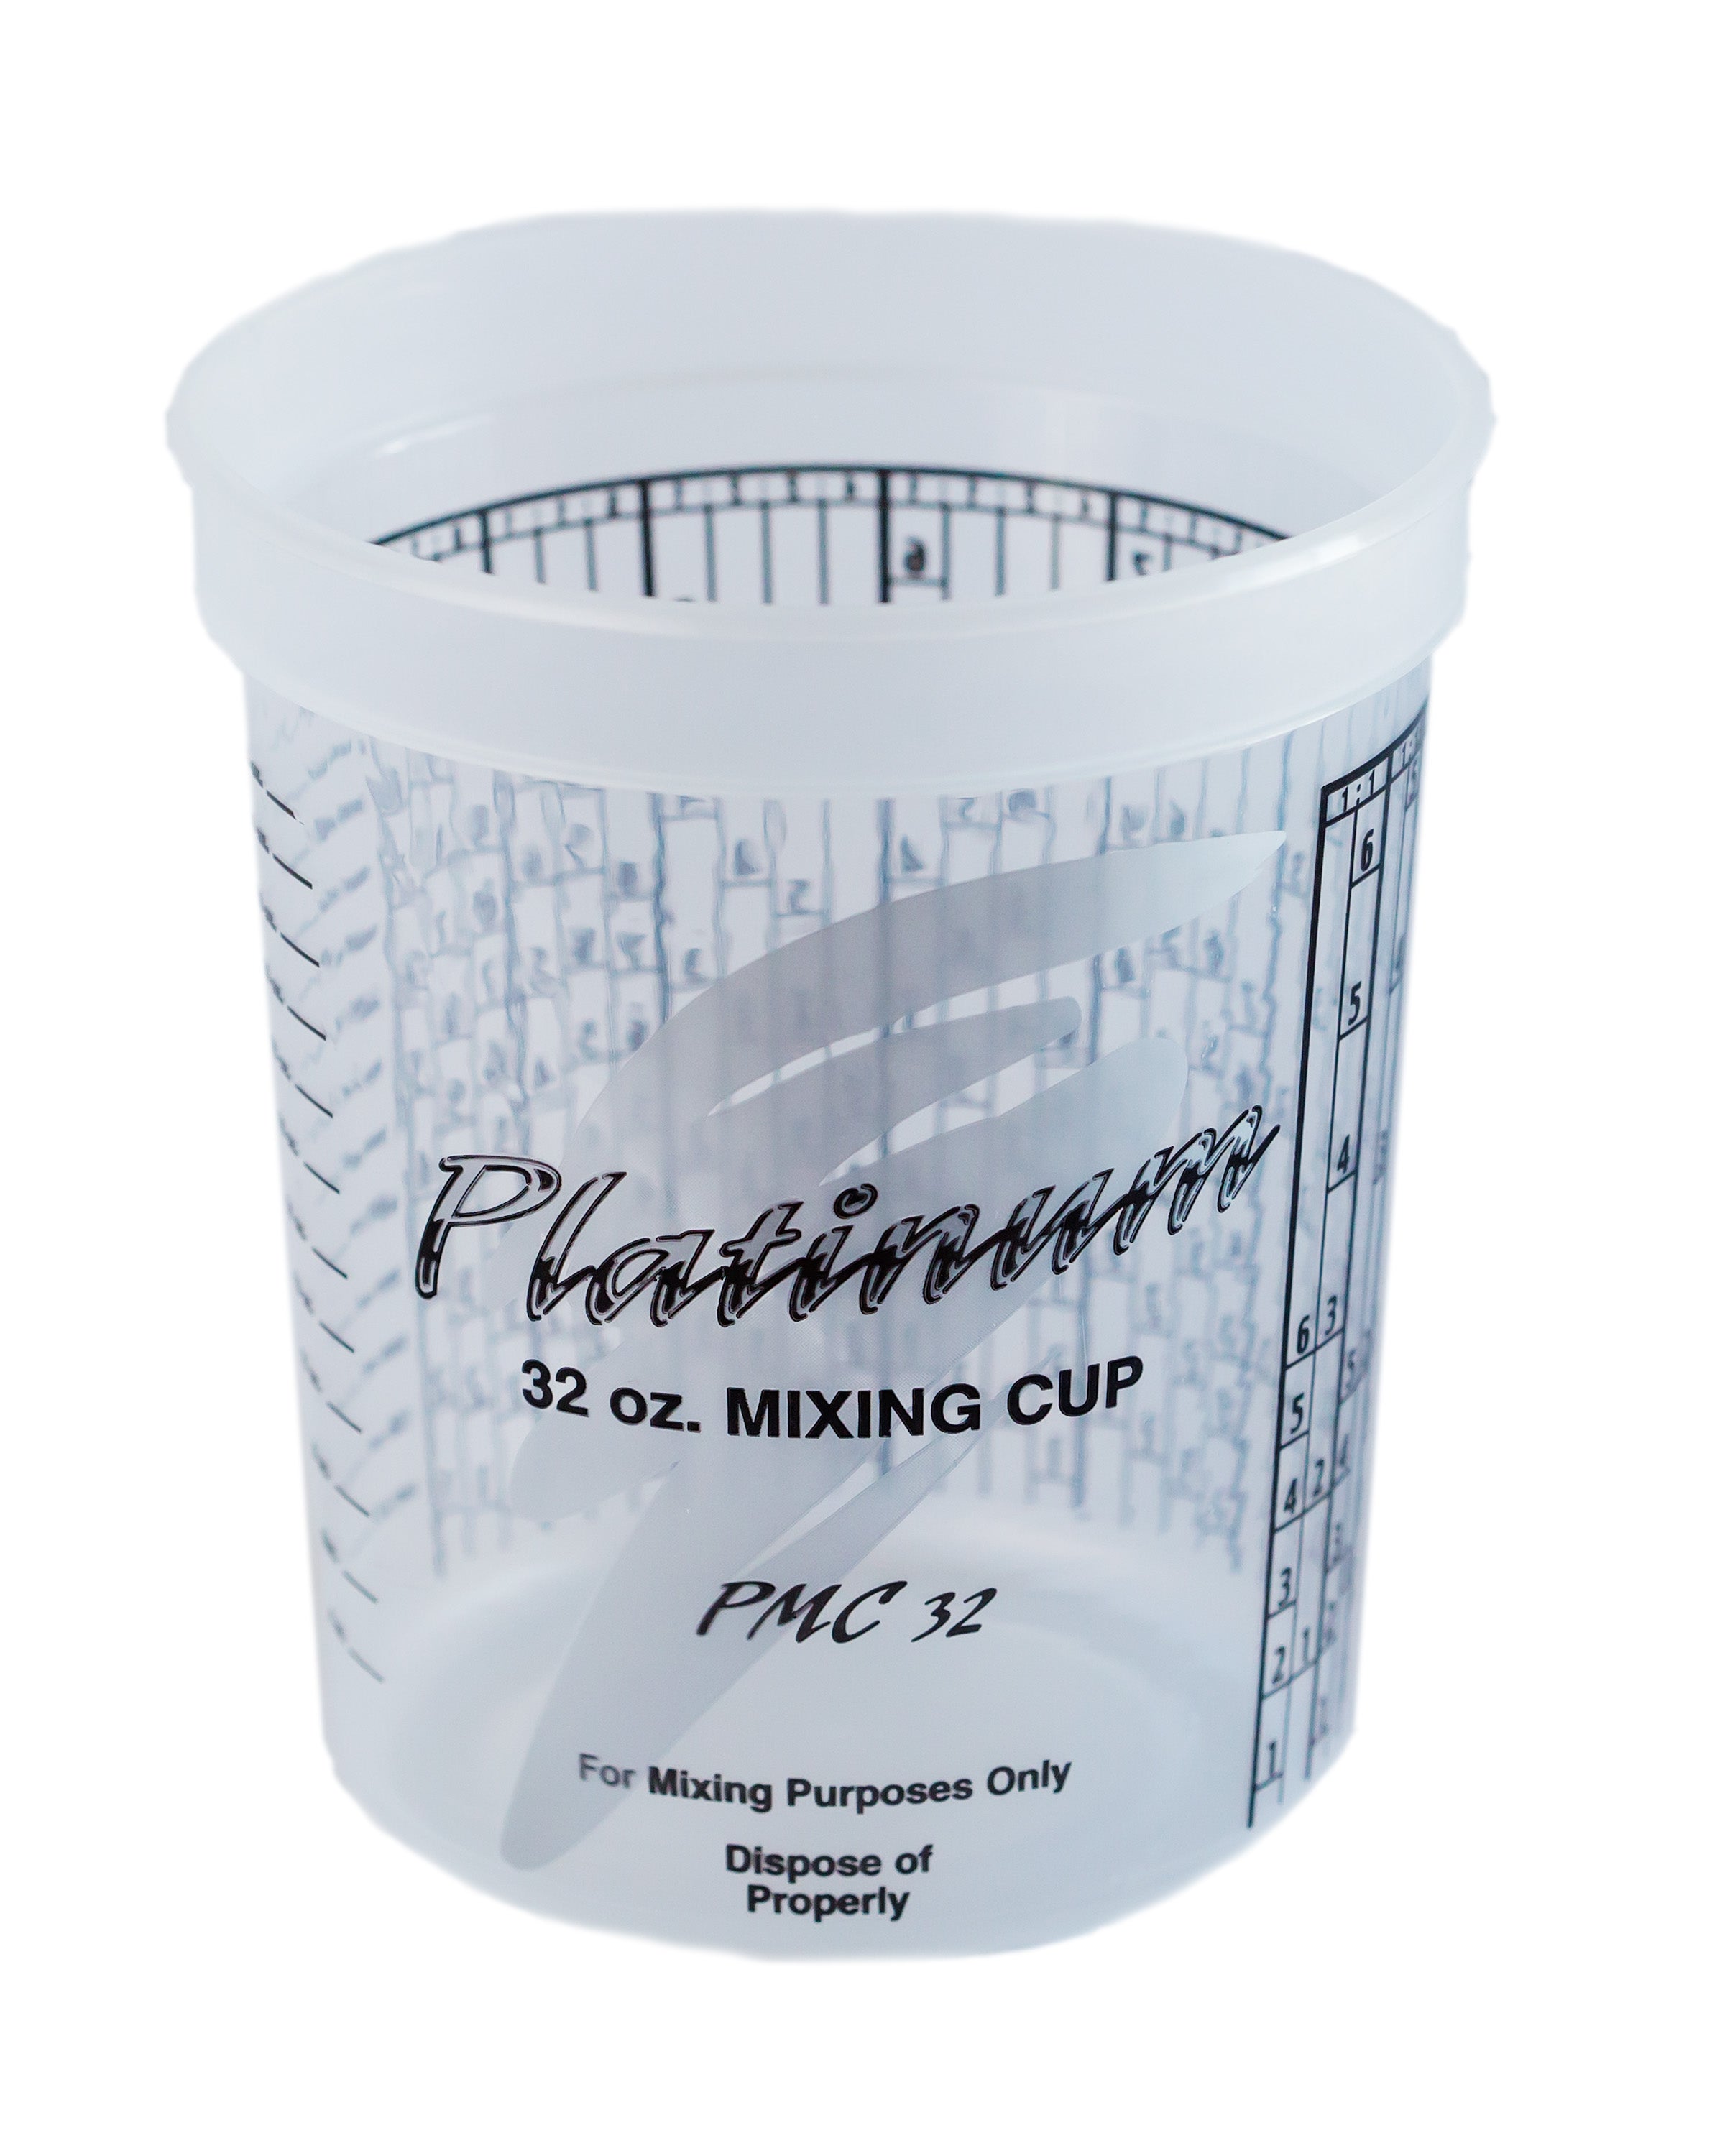 Buy the Allway PC1 Ez Paint Cup